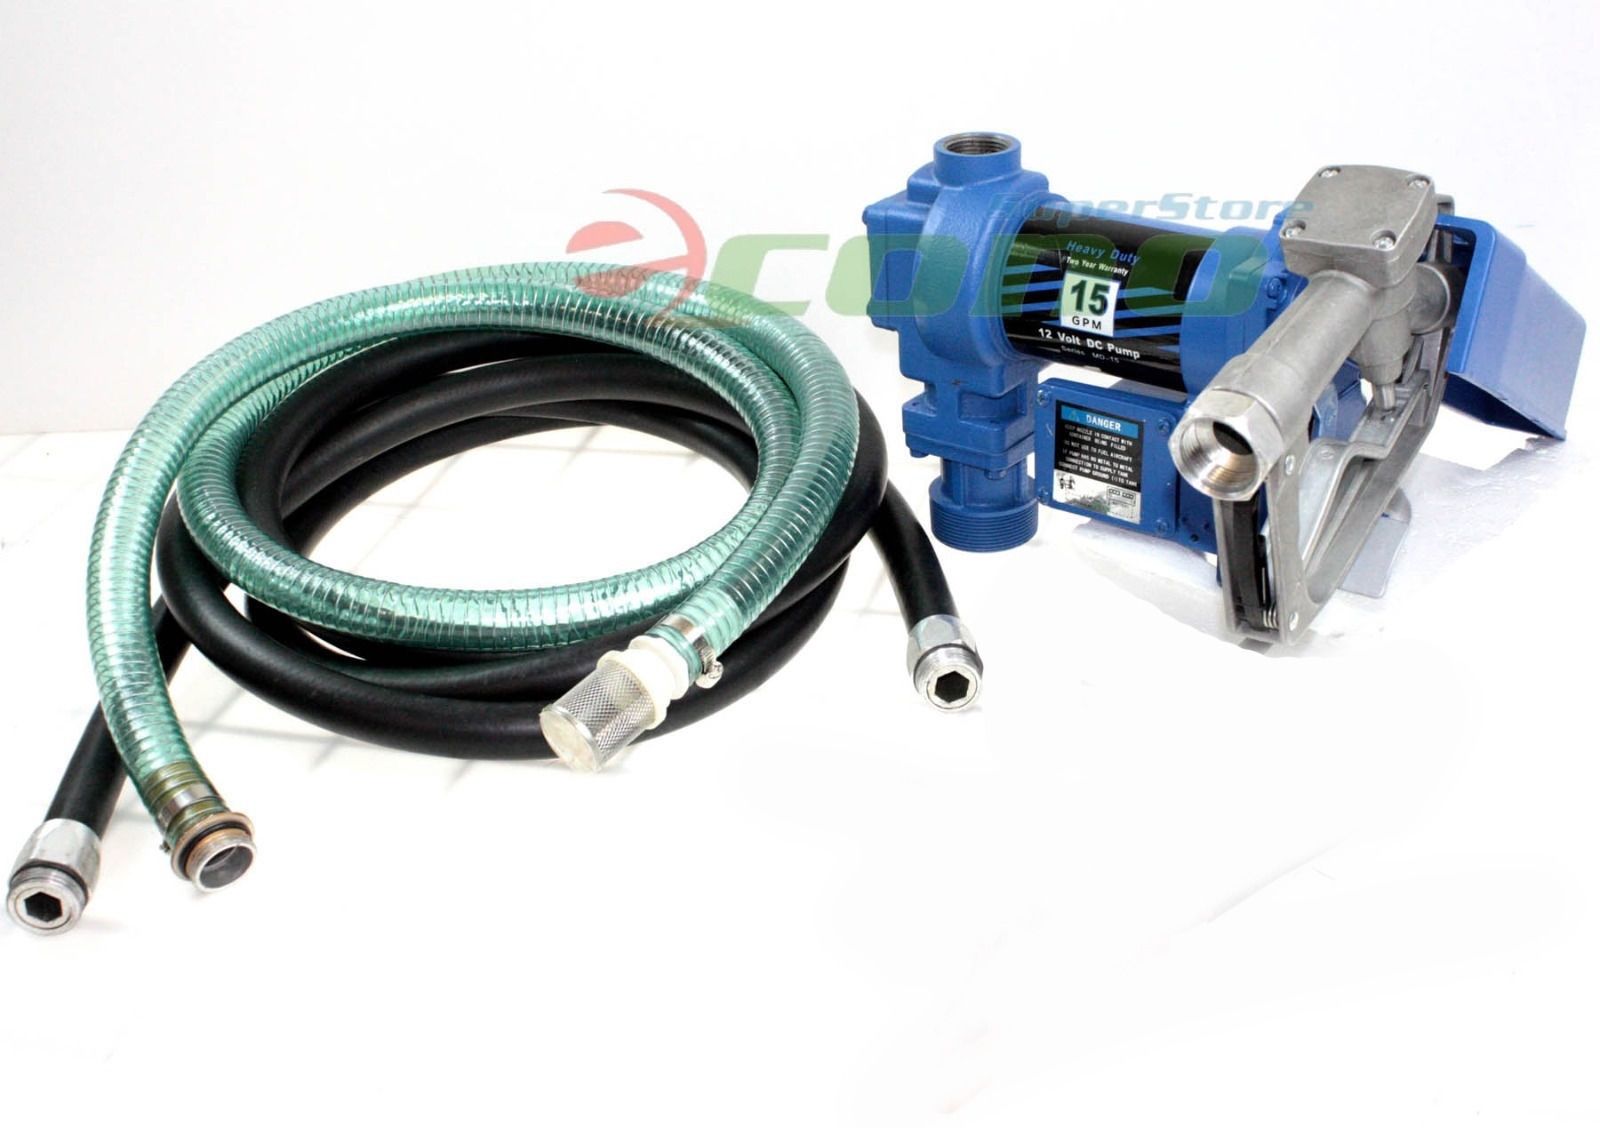 12V Diesel Kerosene Fuel Transfer Direct Current Pump Kit With Nozzle & 12' Hose